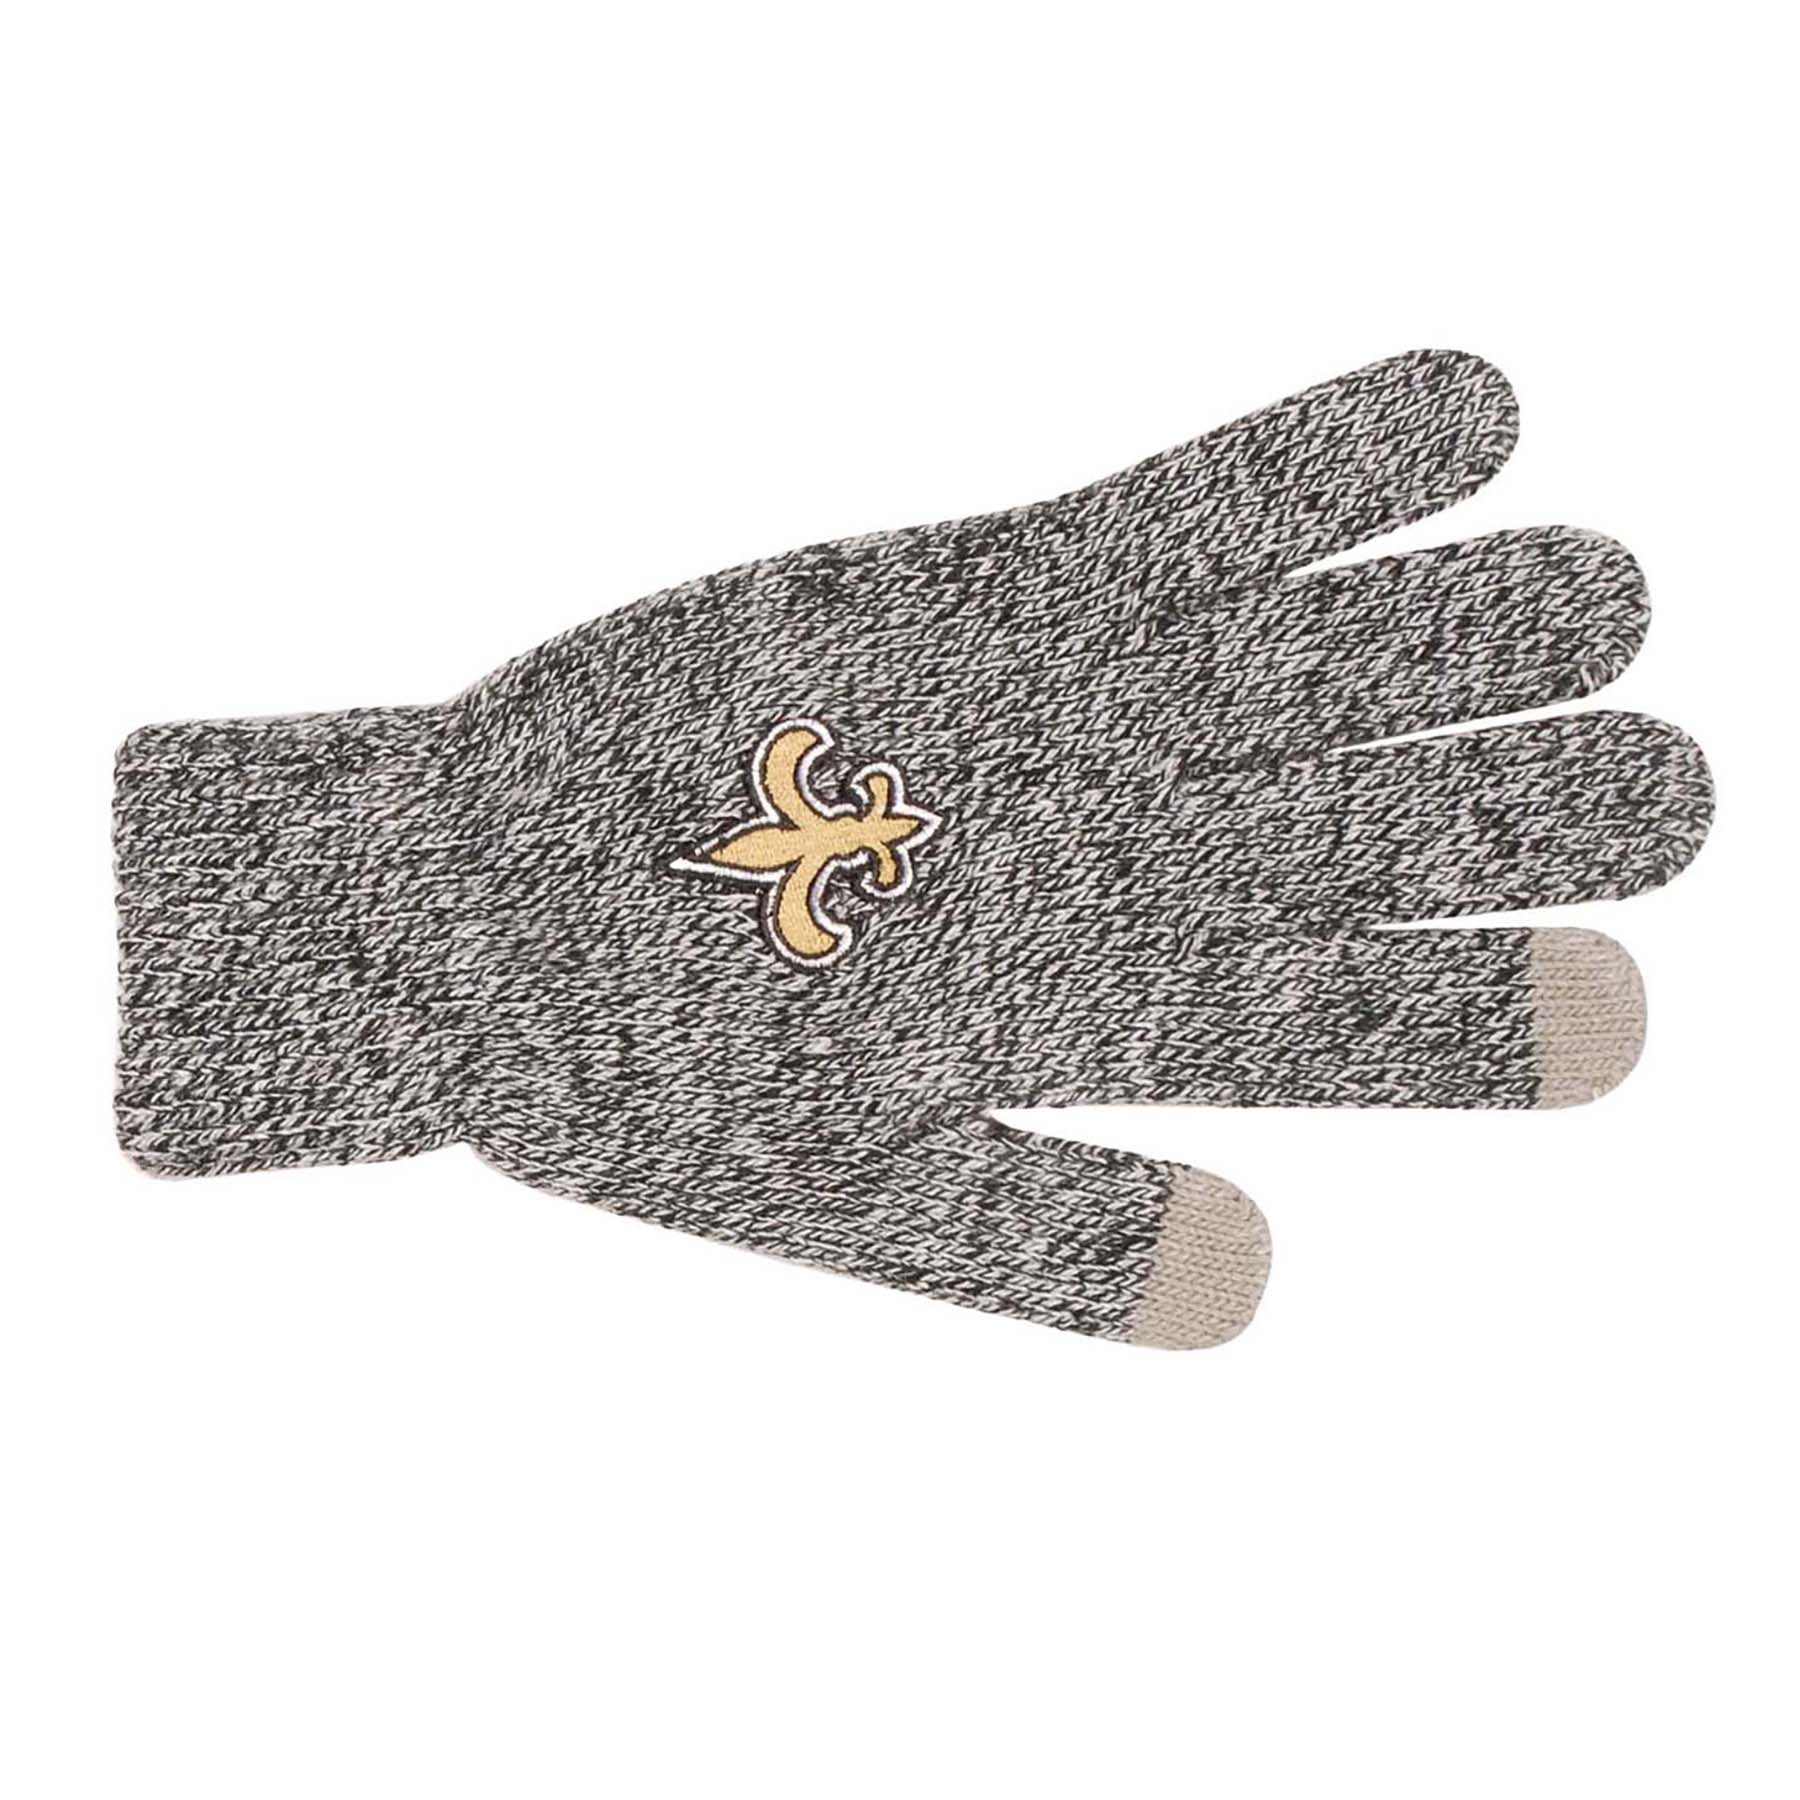 توتورو New Orleans Saints NFL Adult Winter Warm Gloves Dark Gray توتورو